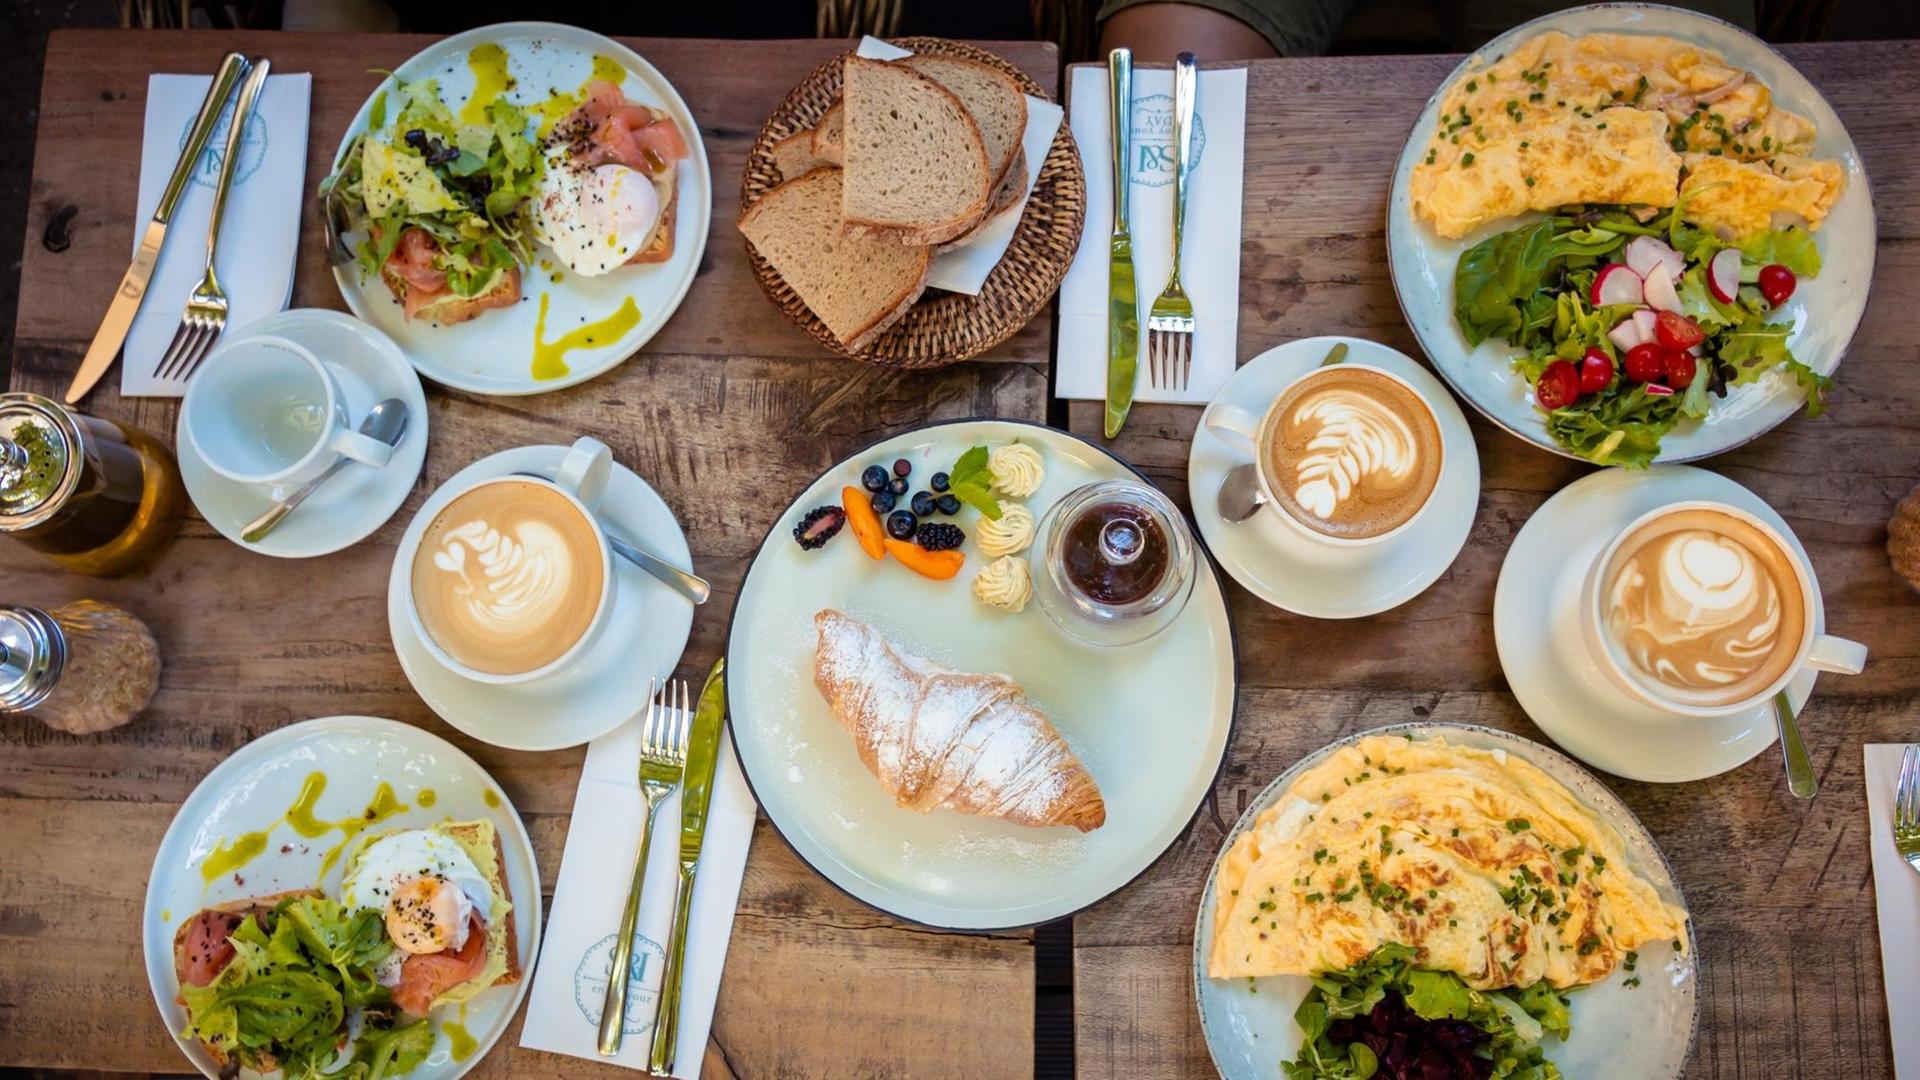 Das Foto zeigt einen gedeckten Frühstückstisch von oben. Auf vier Tellern sind Speisen angerichtet, unter anderem Rührei, Brot und ein Croissant mit Puderzucker sind zu sehen sowie Milchkaffee in Tassen.